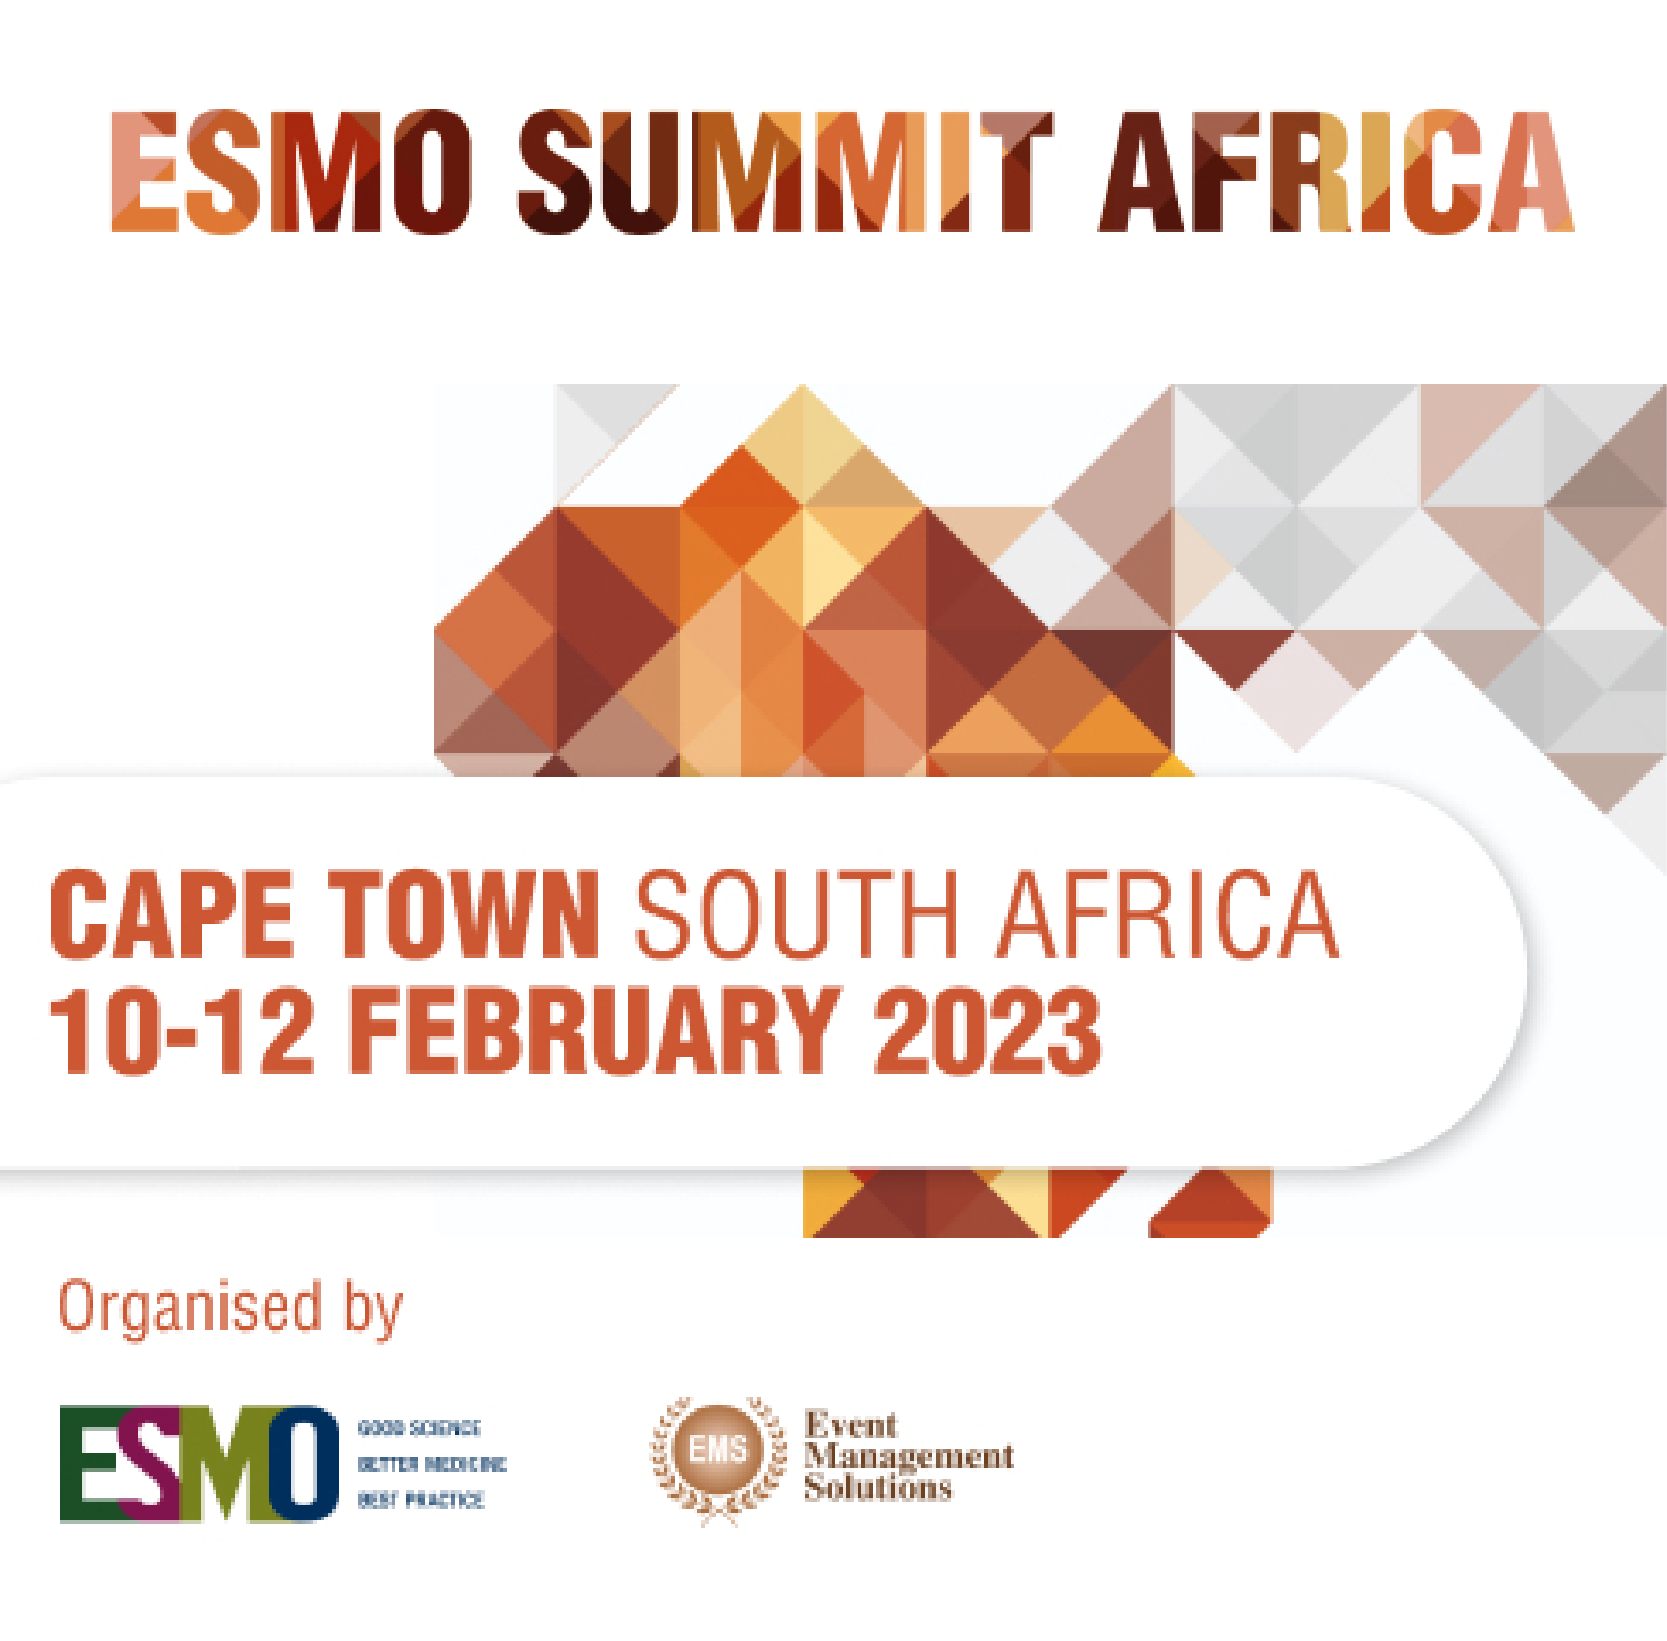 The ESMO Summit Africa 2023